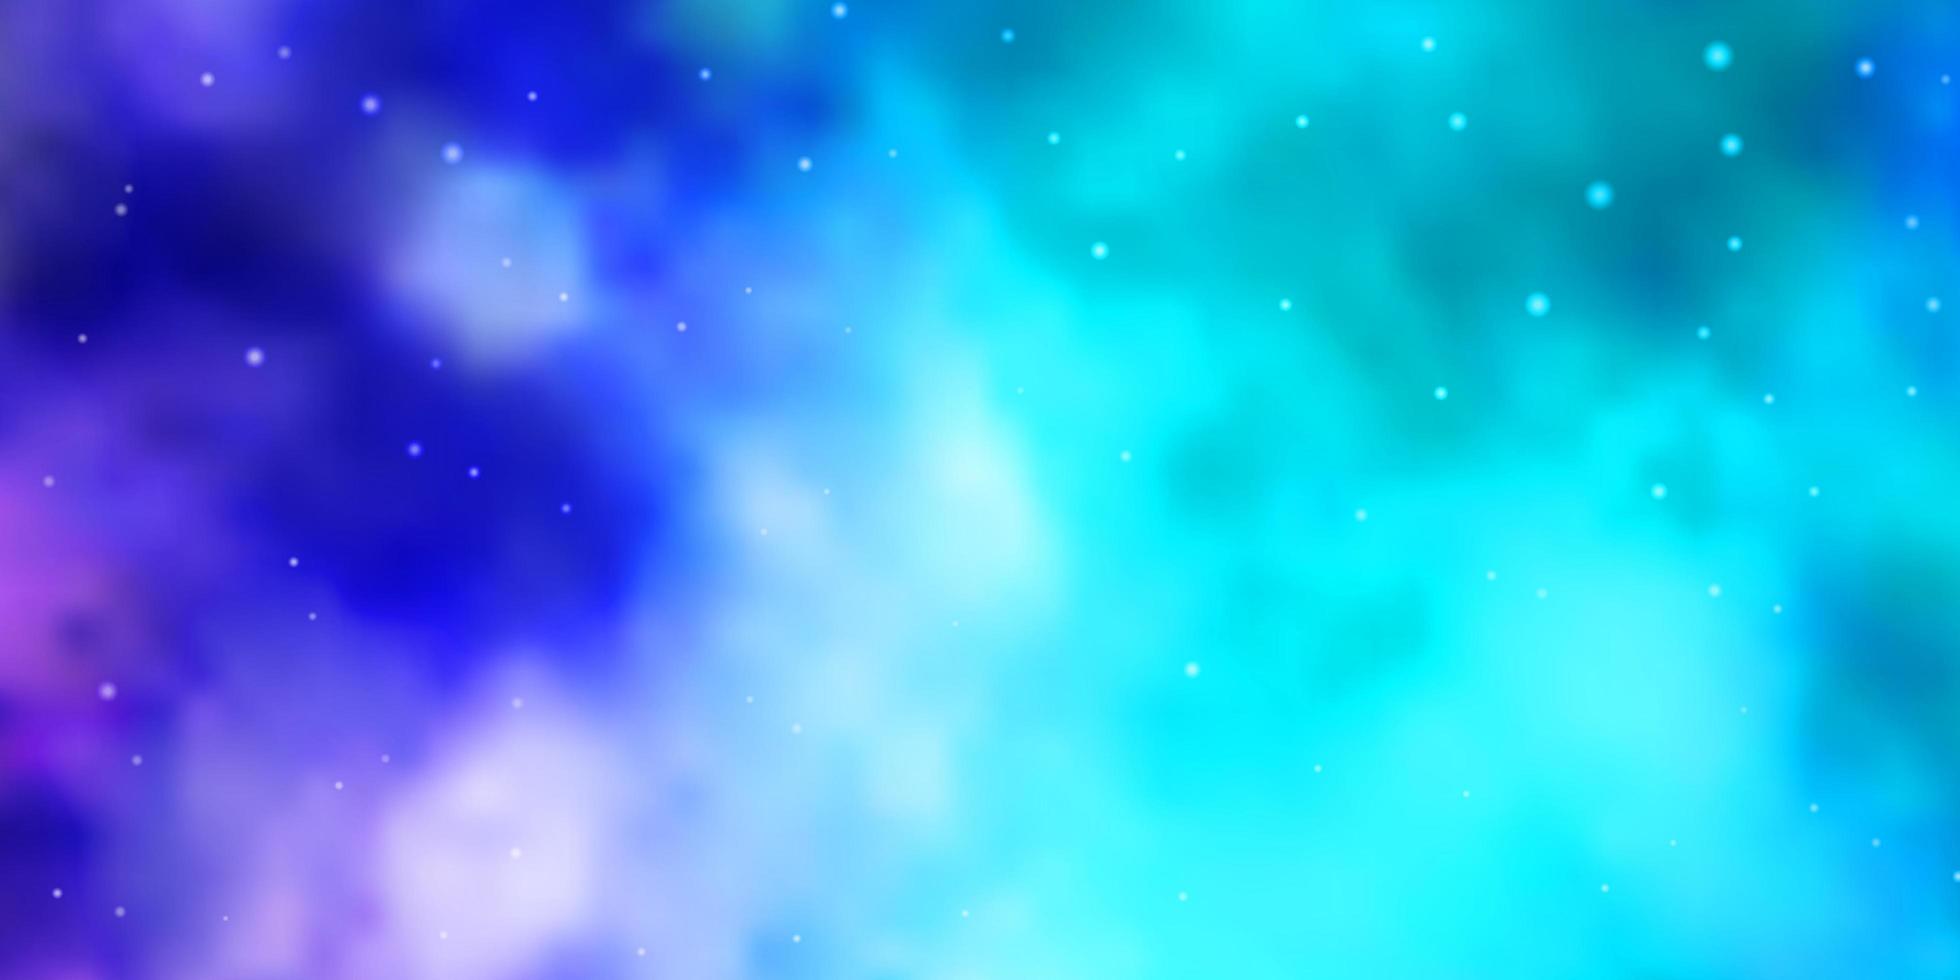 hellrosa, blaues Vektormuster mit abstrakten Sternen. vektor